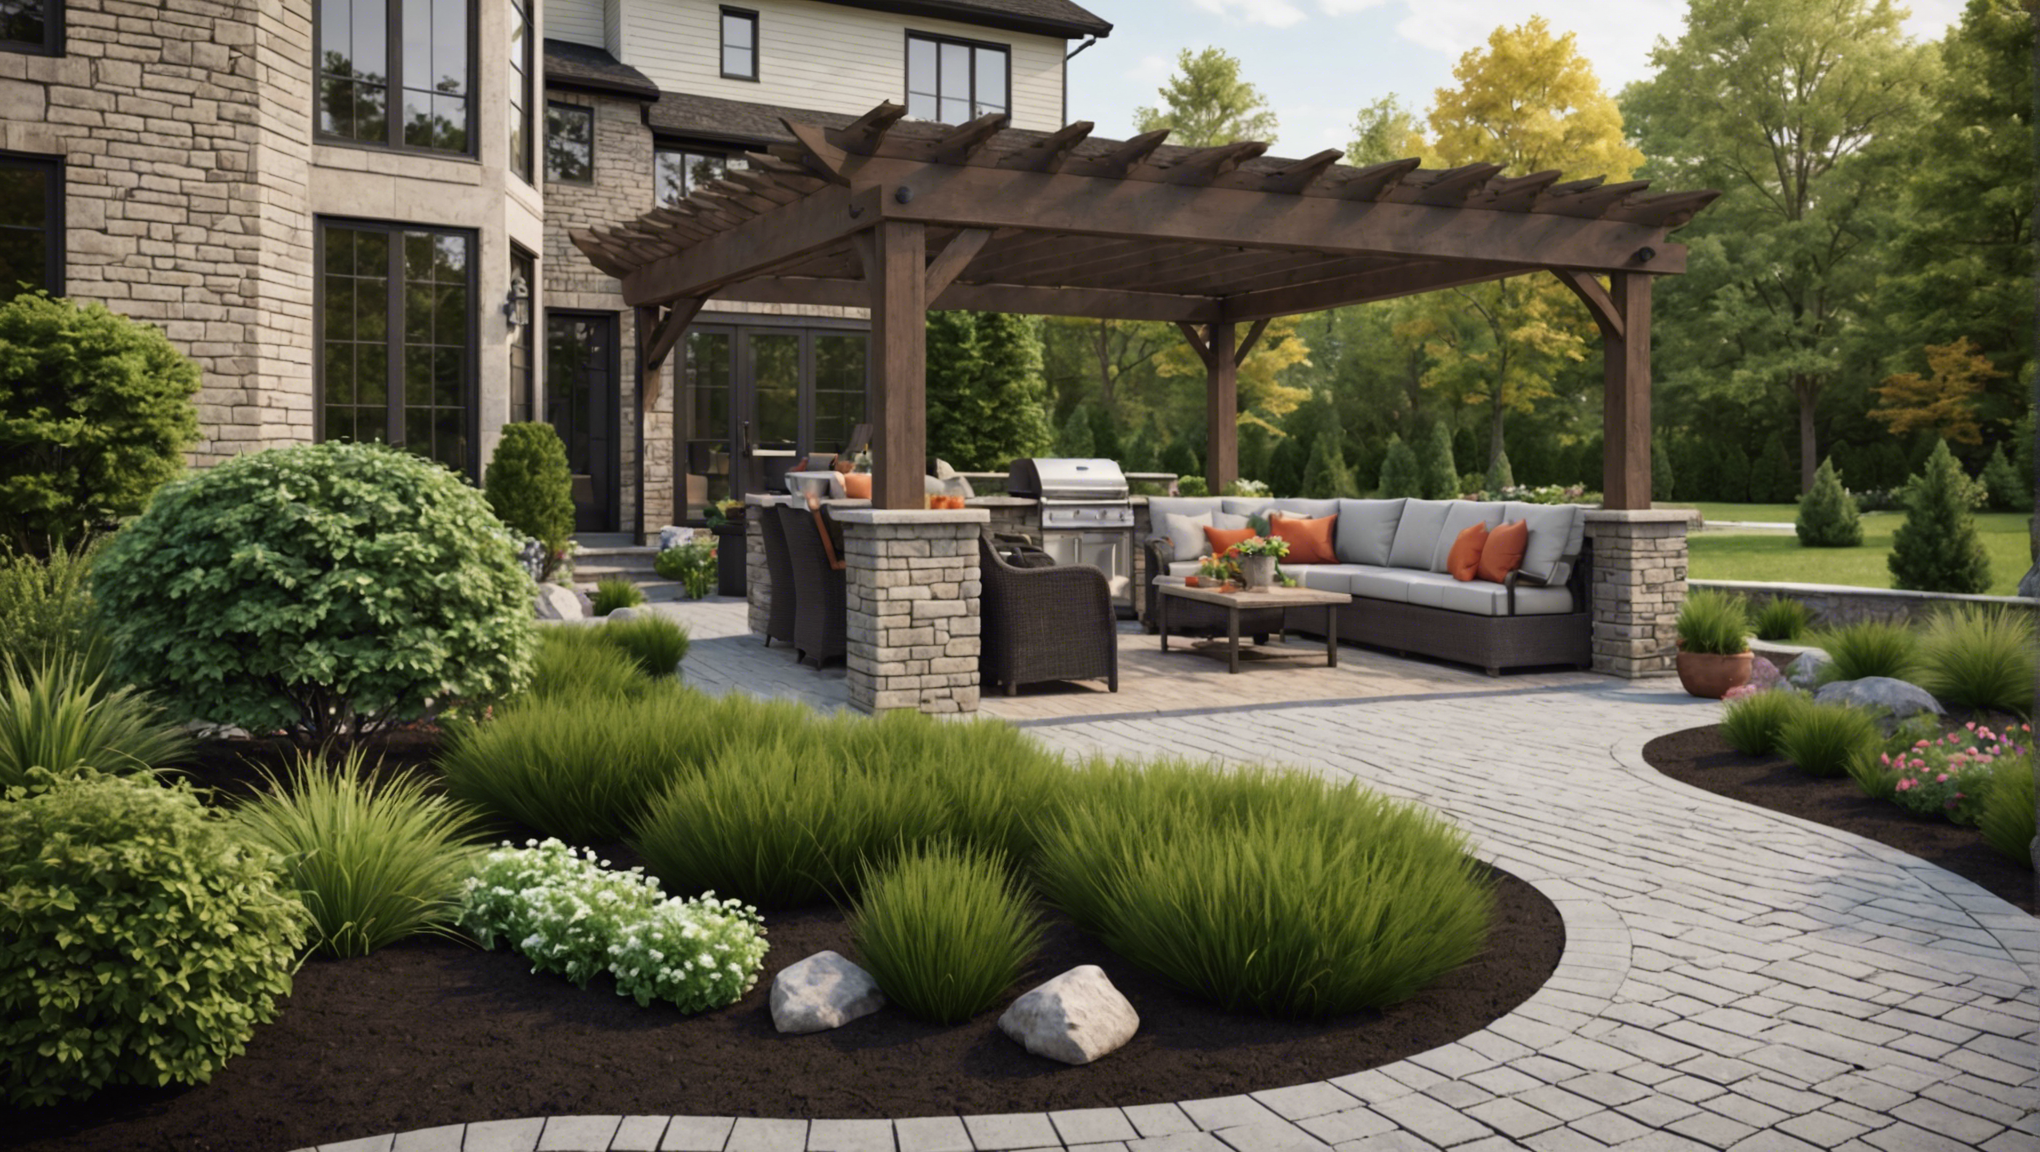 découvrez nos astuces pour réussir l'aménagement paysager de votre espace extérieur et profiter pleinement de votre jardin ou terrasse.